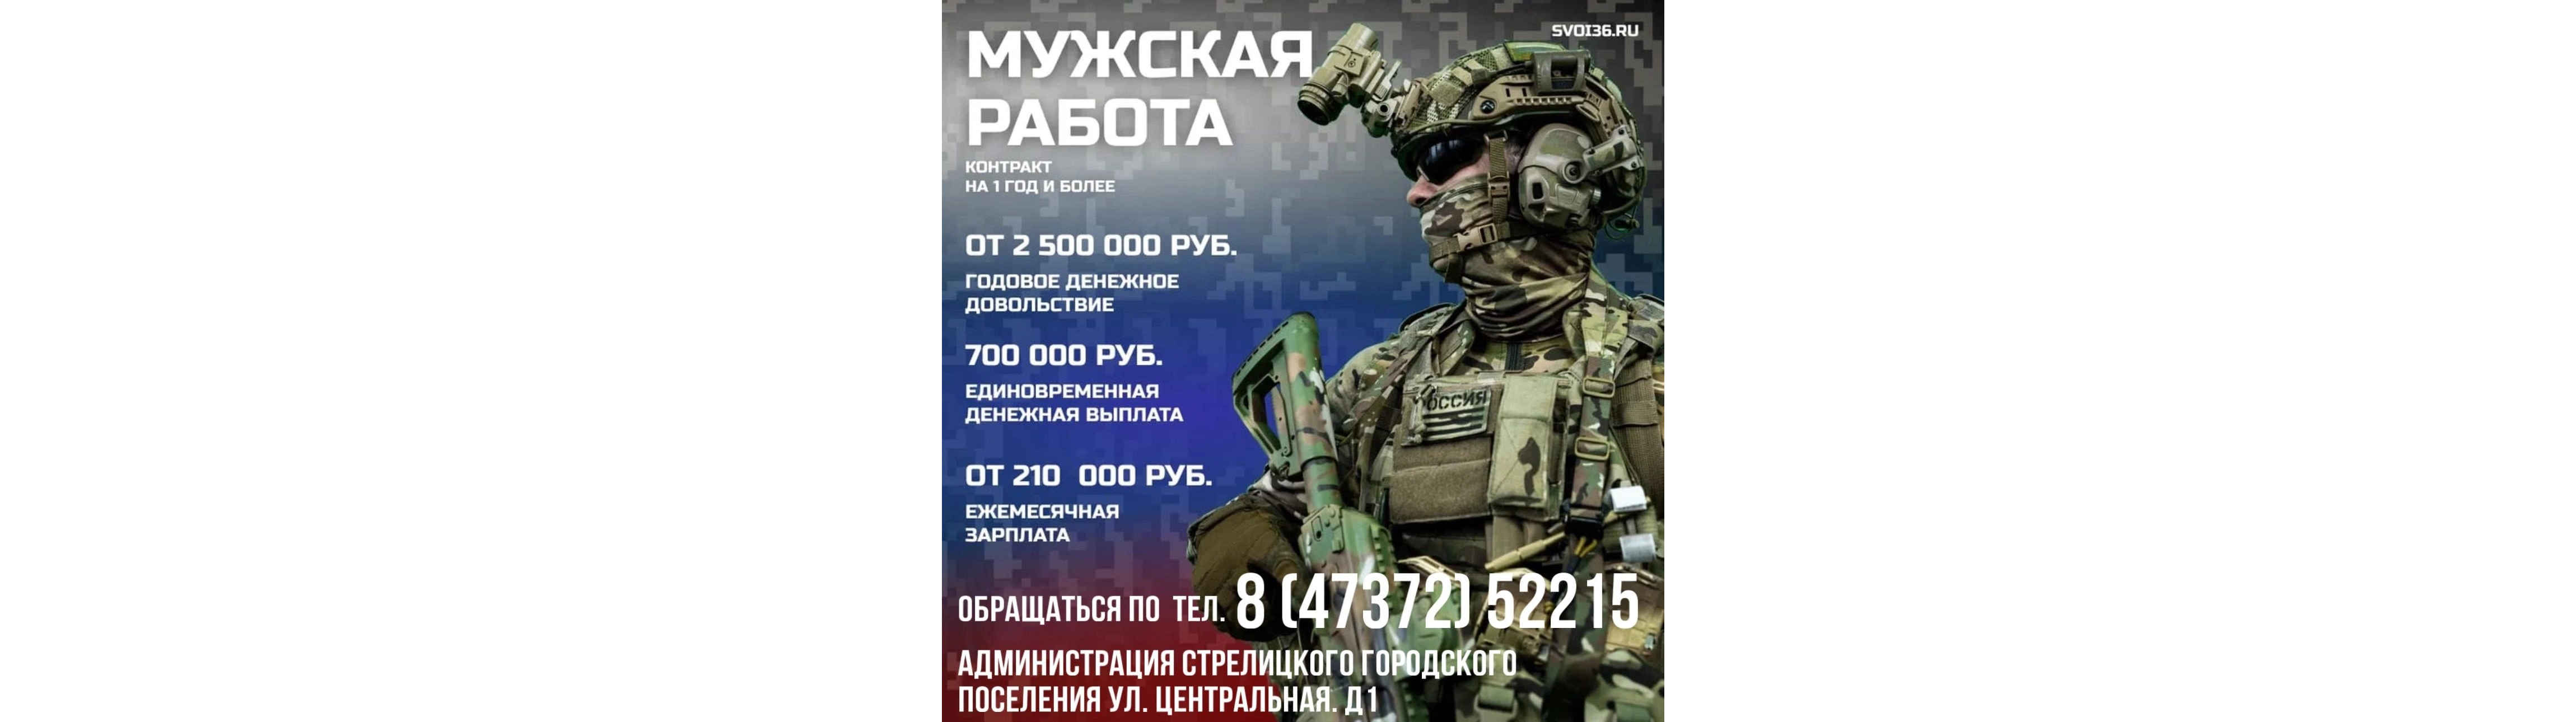 Военная служба по контракту в Вооруженных Силах РФ.